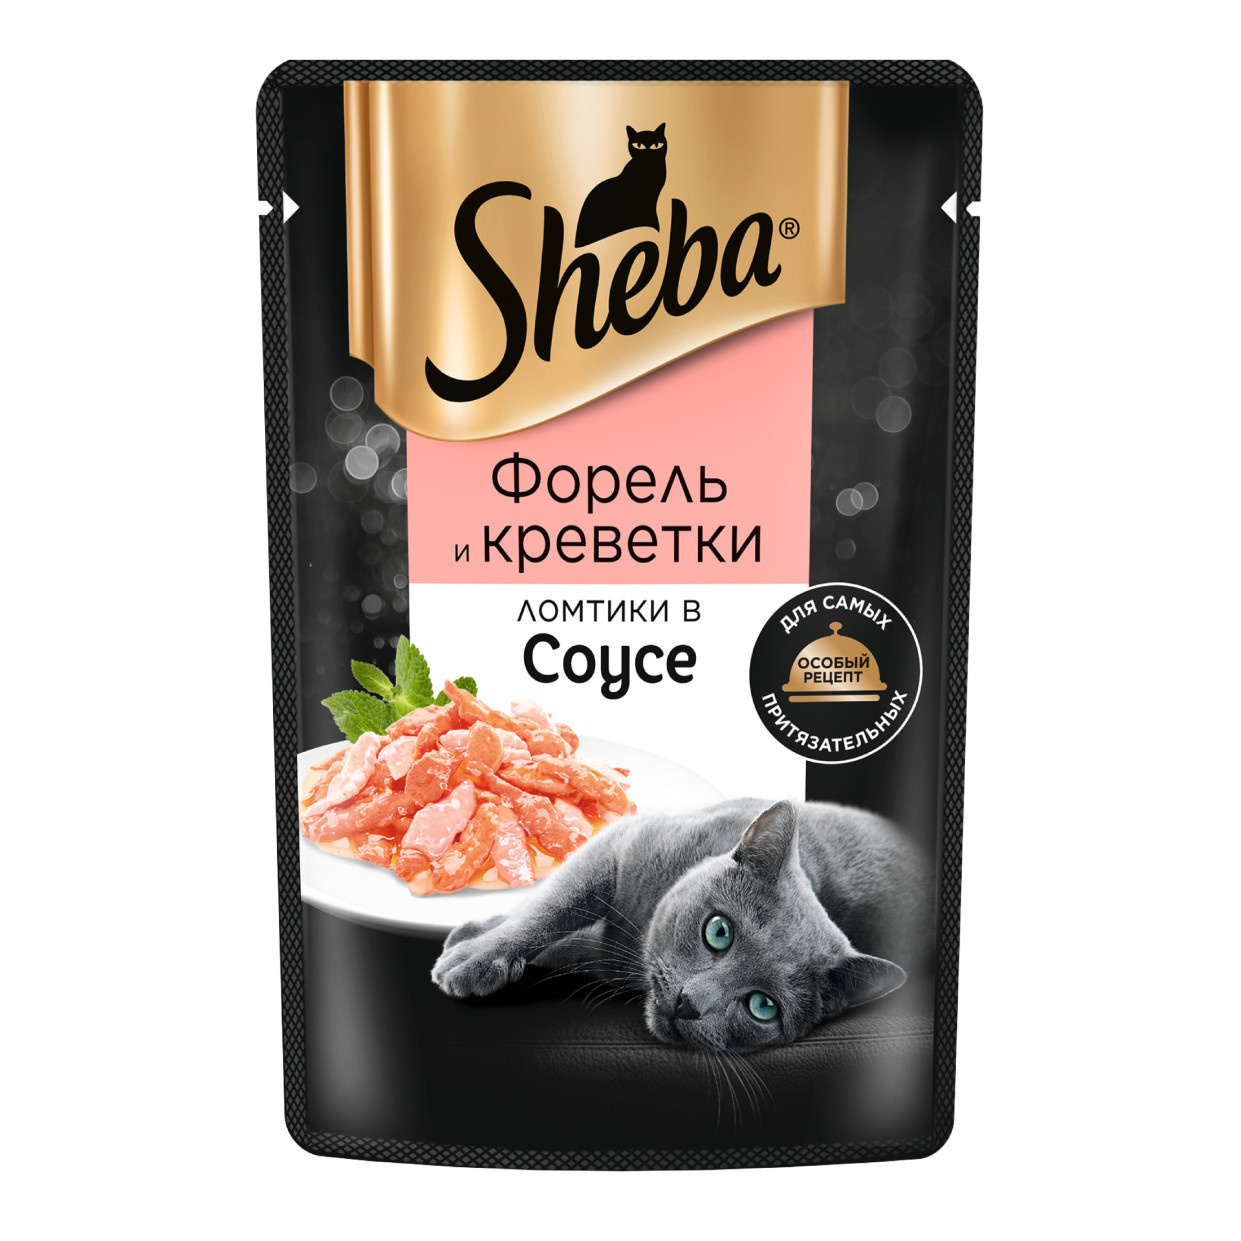 Sheba Sheba влажный корм для кошек «Ломтики в соусе, с форелью и креветками» (75 г) sheba влажный корм для кошек с форелью и креветками в соусе 28шт в уп 75 гр